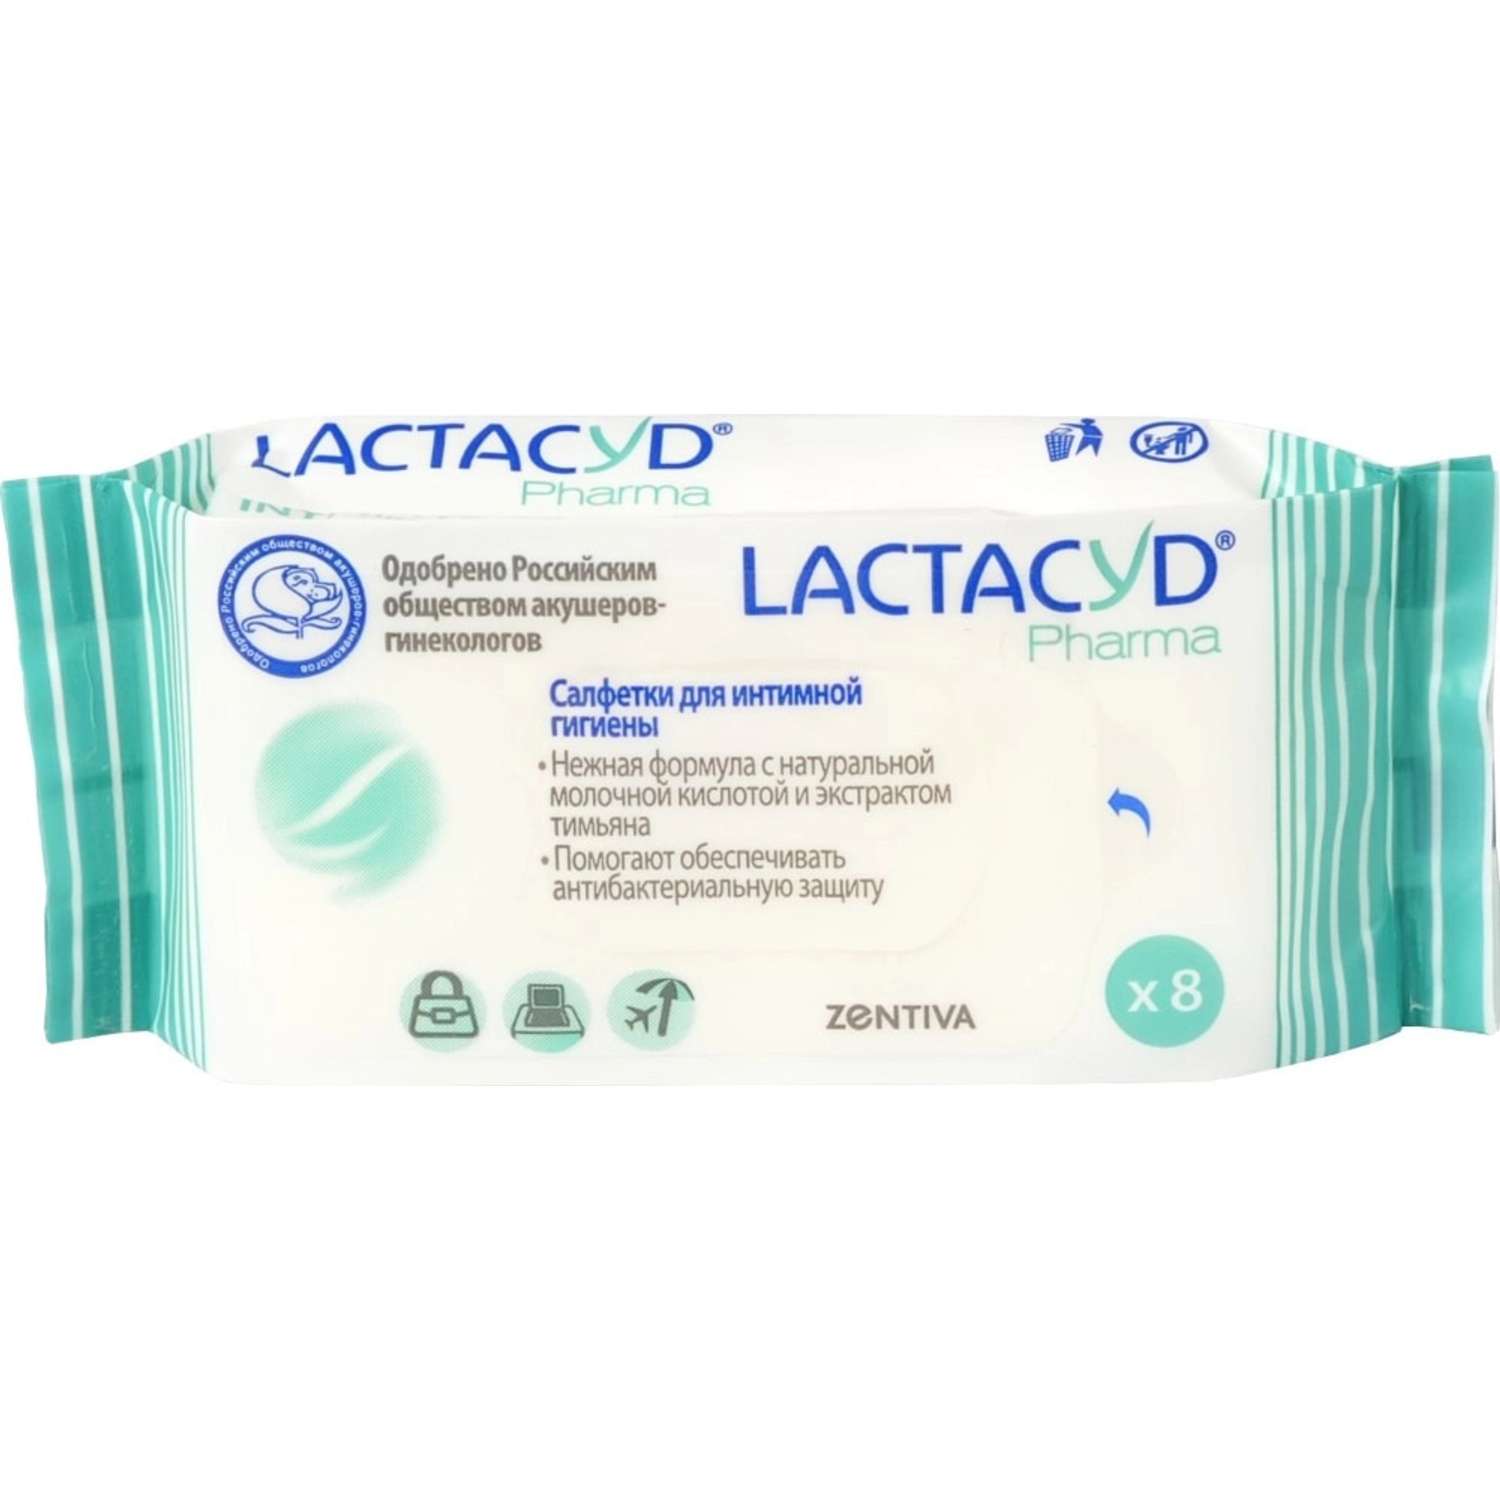 Салфетки Lactacyd Pharma для интимной гигиены с тимьяном №8 - фото 1